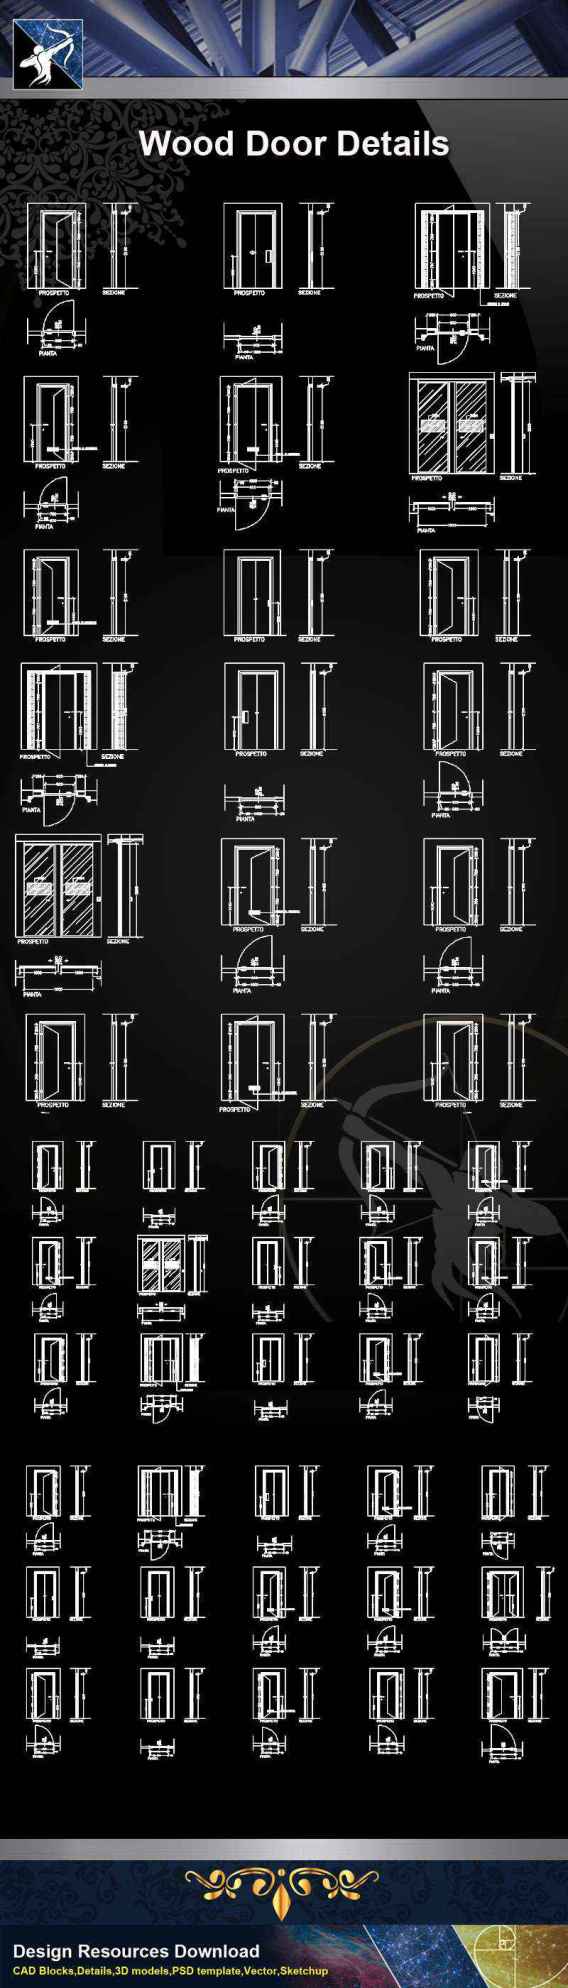 【Architecture CAD Details Collections】Door Details,Main Gate CAD Details